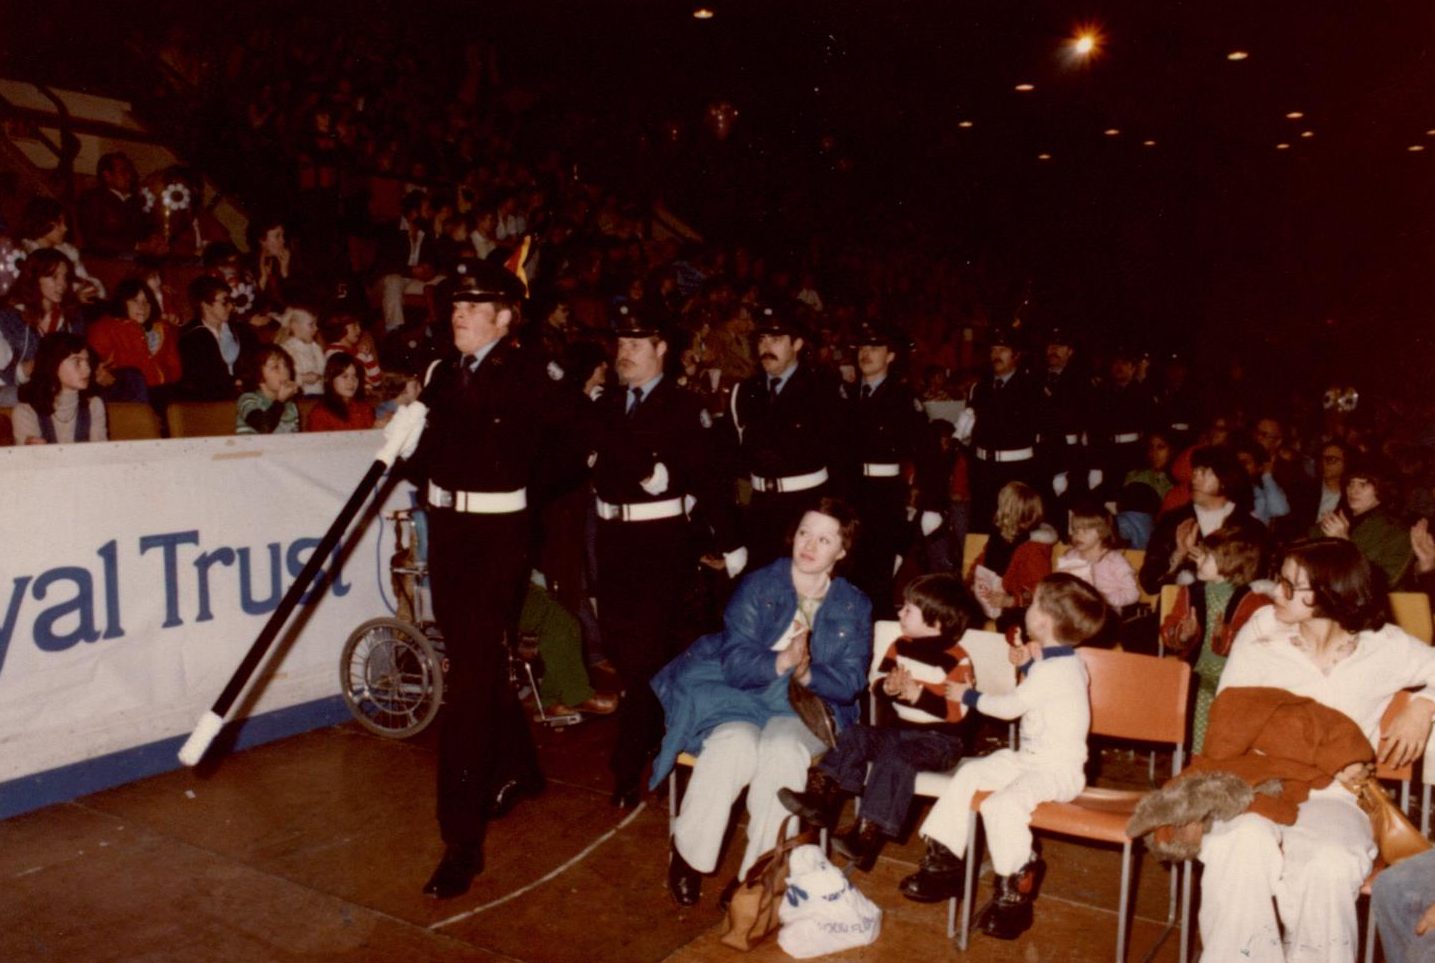 La garde d’honneur défile devant la foule assise dans les estrades et sur le plancher à l’occasion d’un défilé communautaire.